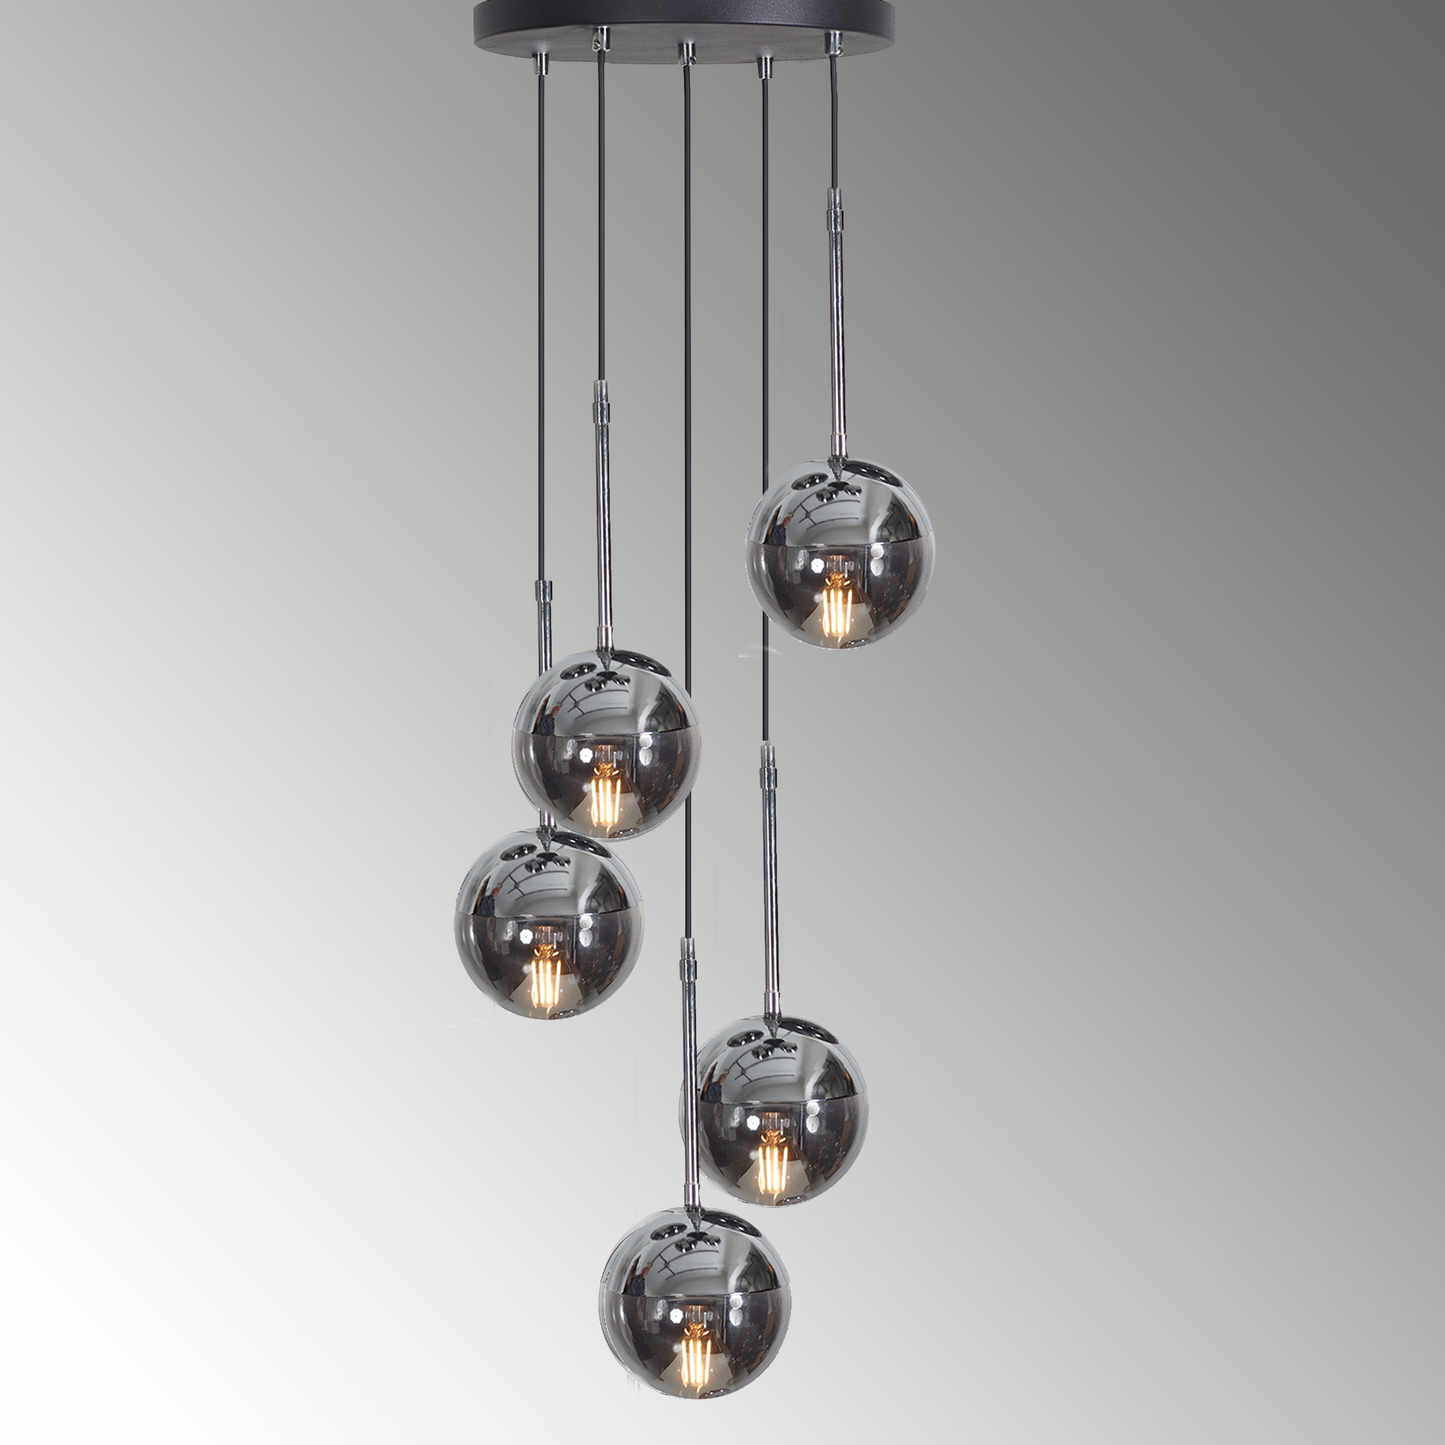 Luzarana Nova 5 chroom metalen behuizing rookglas design luxe hanglamp